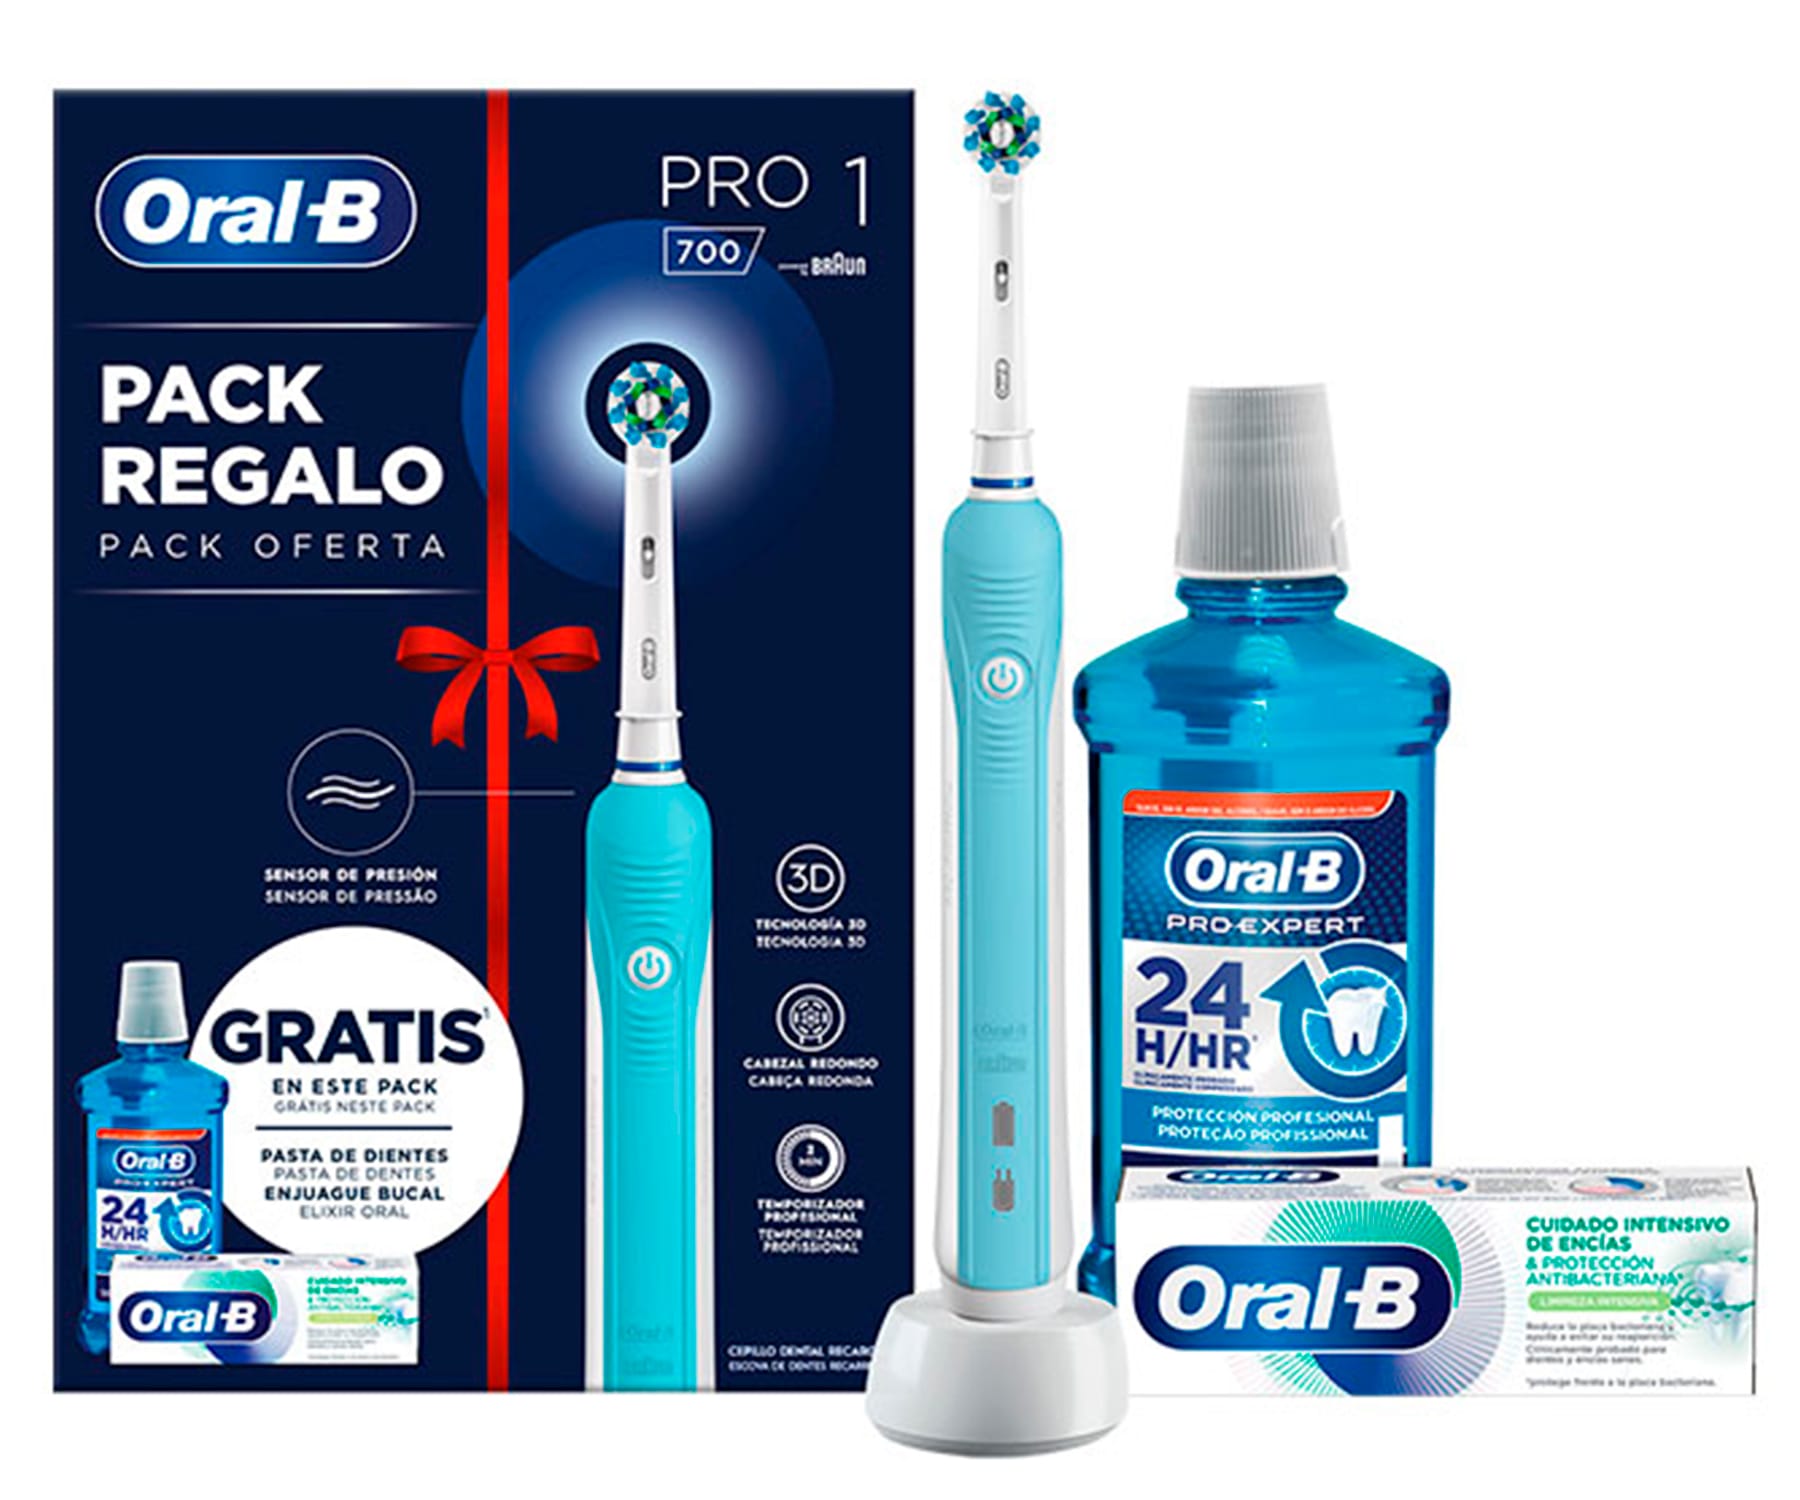 BRAUN Oral-B Pro 1 700 / Cepillo de dientes eléctrico